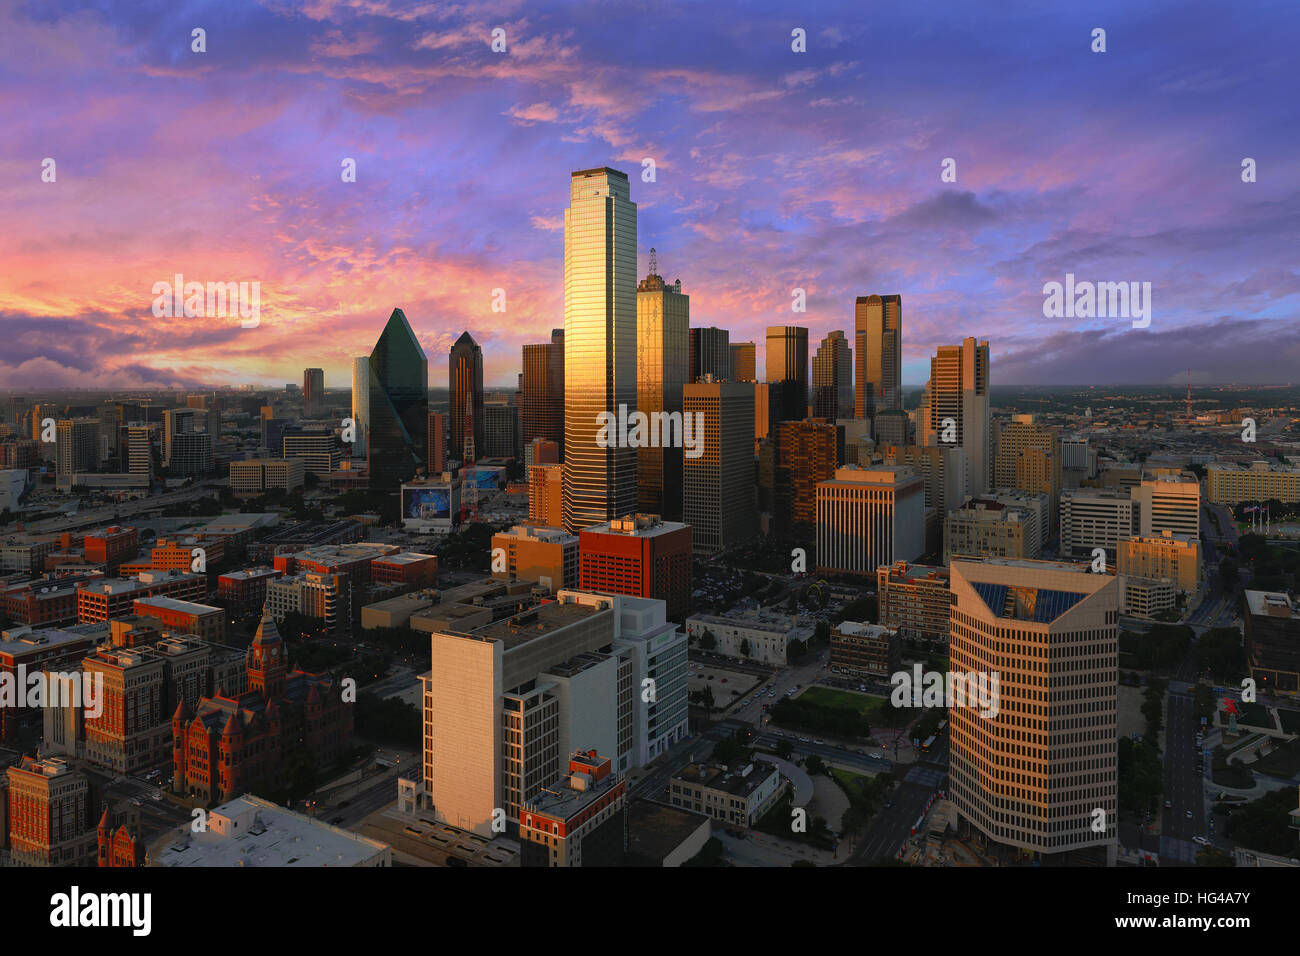 Dallas Skyline der Stadt in der Dämmerung, Sonnenuntergang. Dallas Texas Innenstadt, Business-Center. Gewerbegebiet in Großstadt. Dallas Stadtansicht von Reunion Tower. Stockfoto